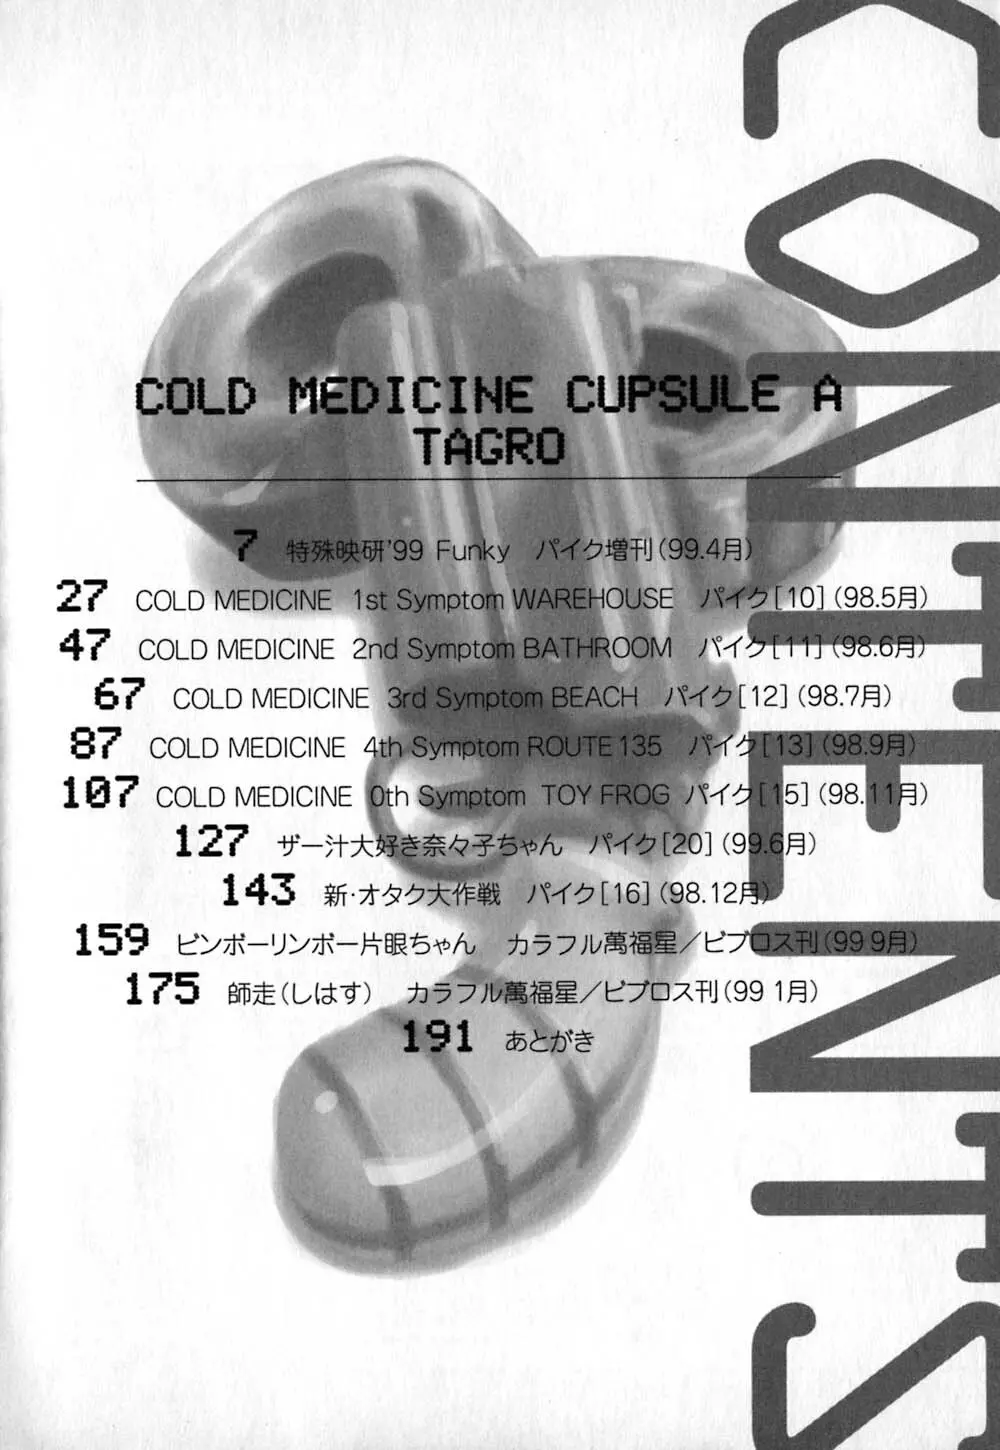 コールドメディシン A錠 – Cold Medicine Capsule A 7ページ